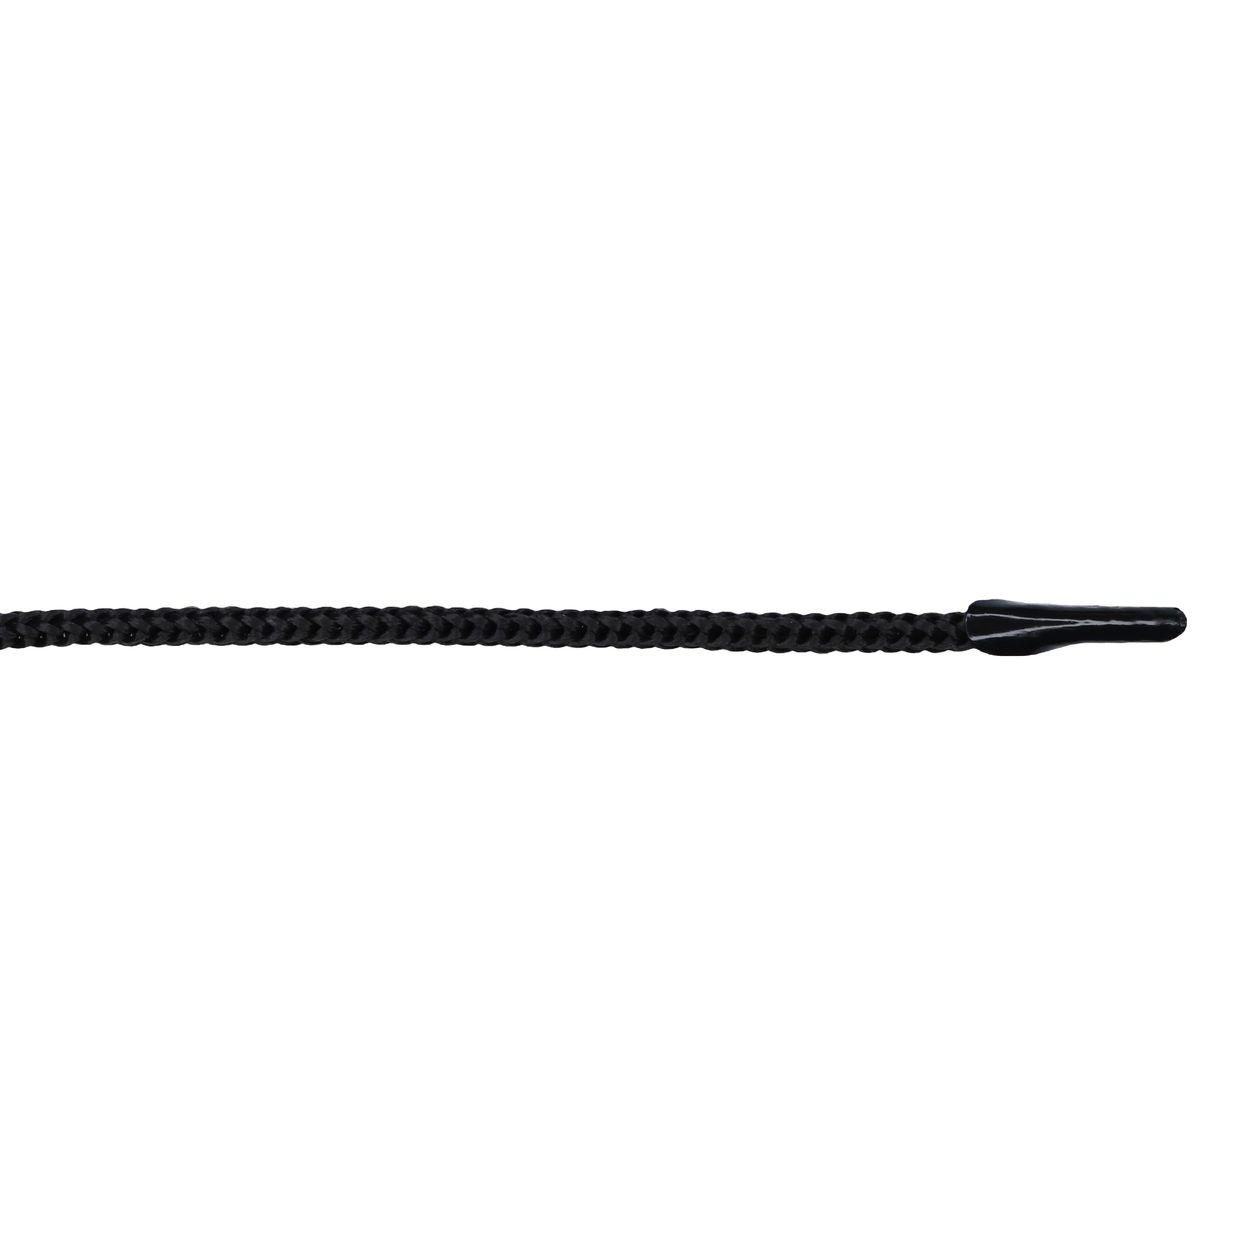 Шнурок для пакетов с крючком арт. 4В511 п/п, диам. 4 мм, дл. 35 см, № 365 ДС черный (уп. 50 пар)